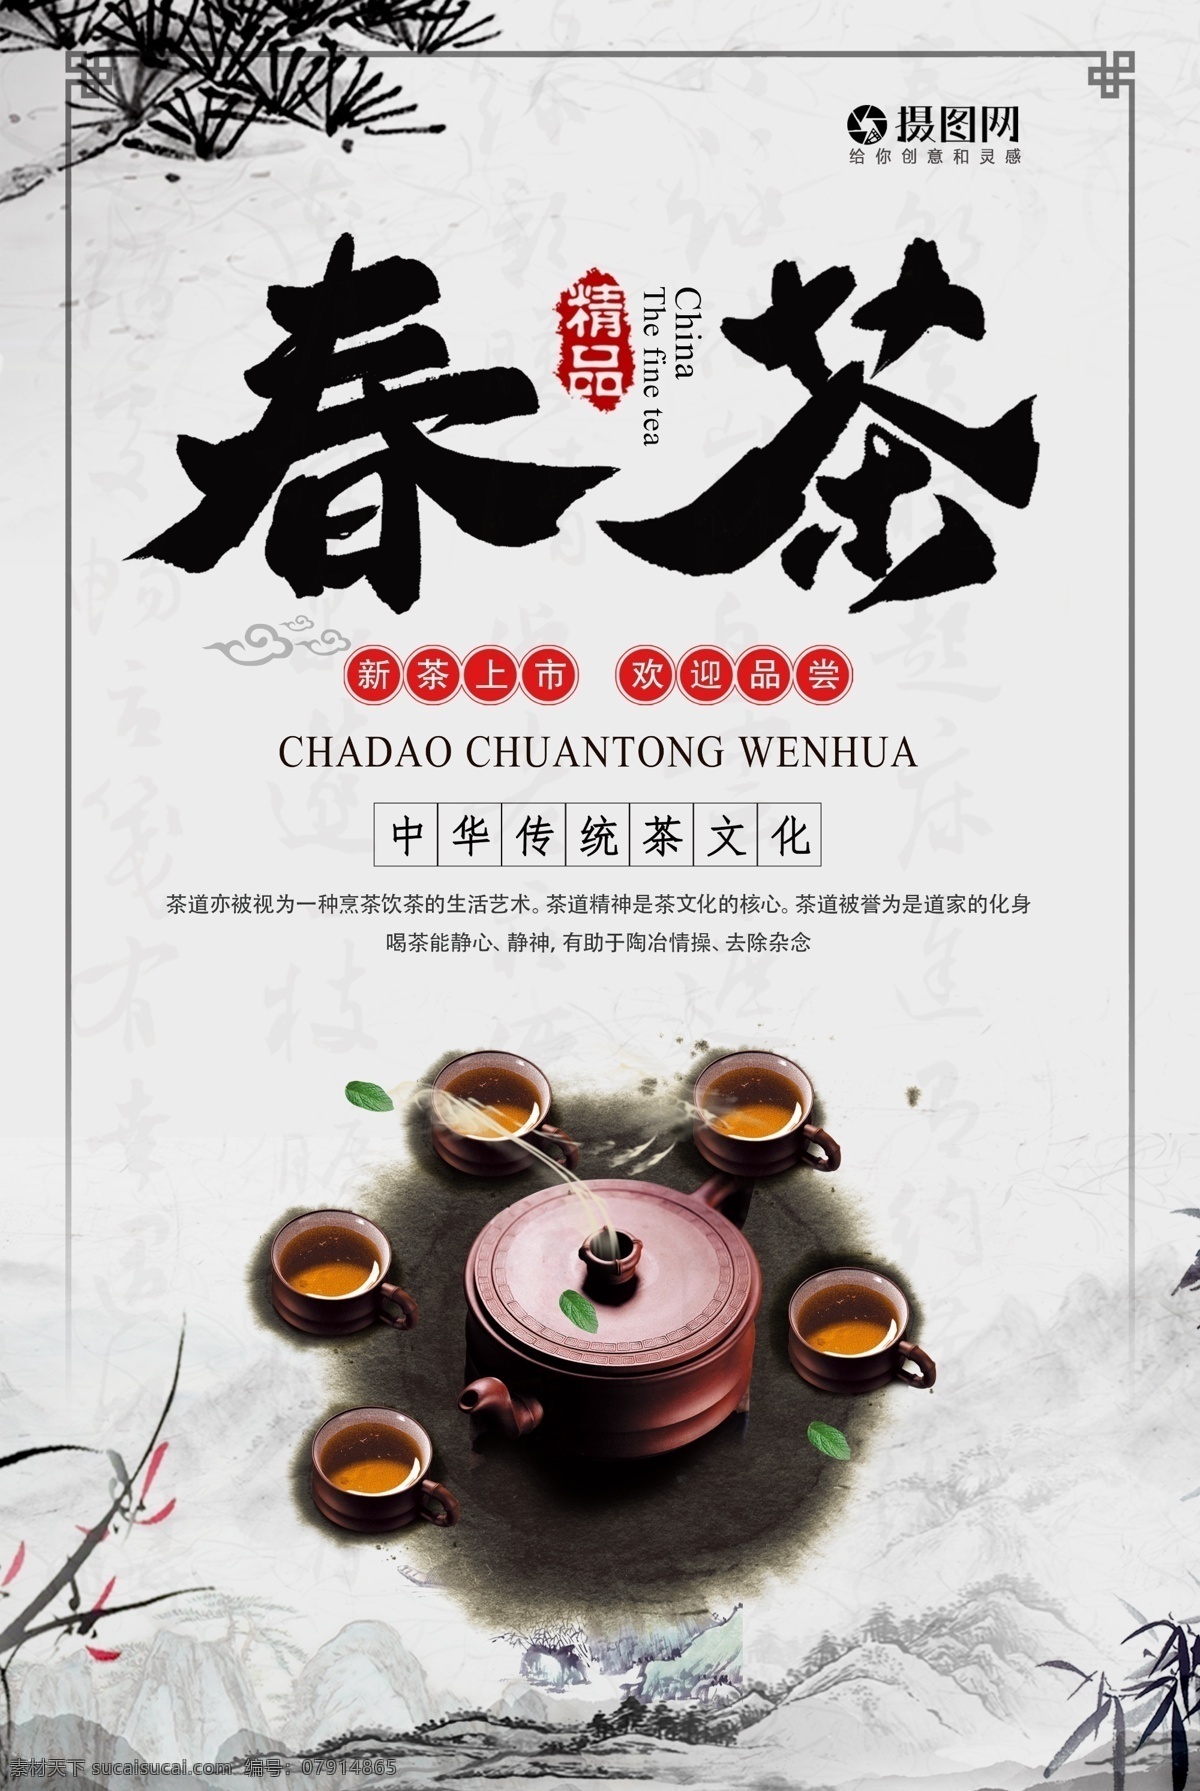 中国 茶文化 春茶 海报 中国茶文化 茶 茶叶 中国风 简约 茶壶 茶具 茶韵 茶艺 茶语 品茶 品茗